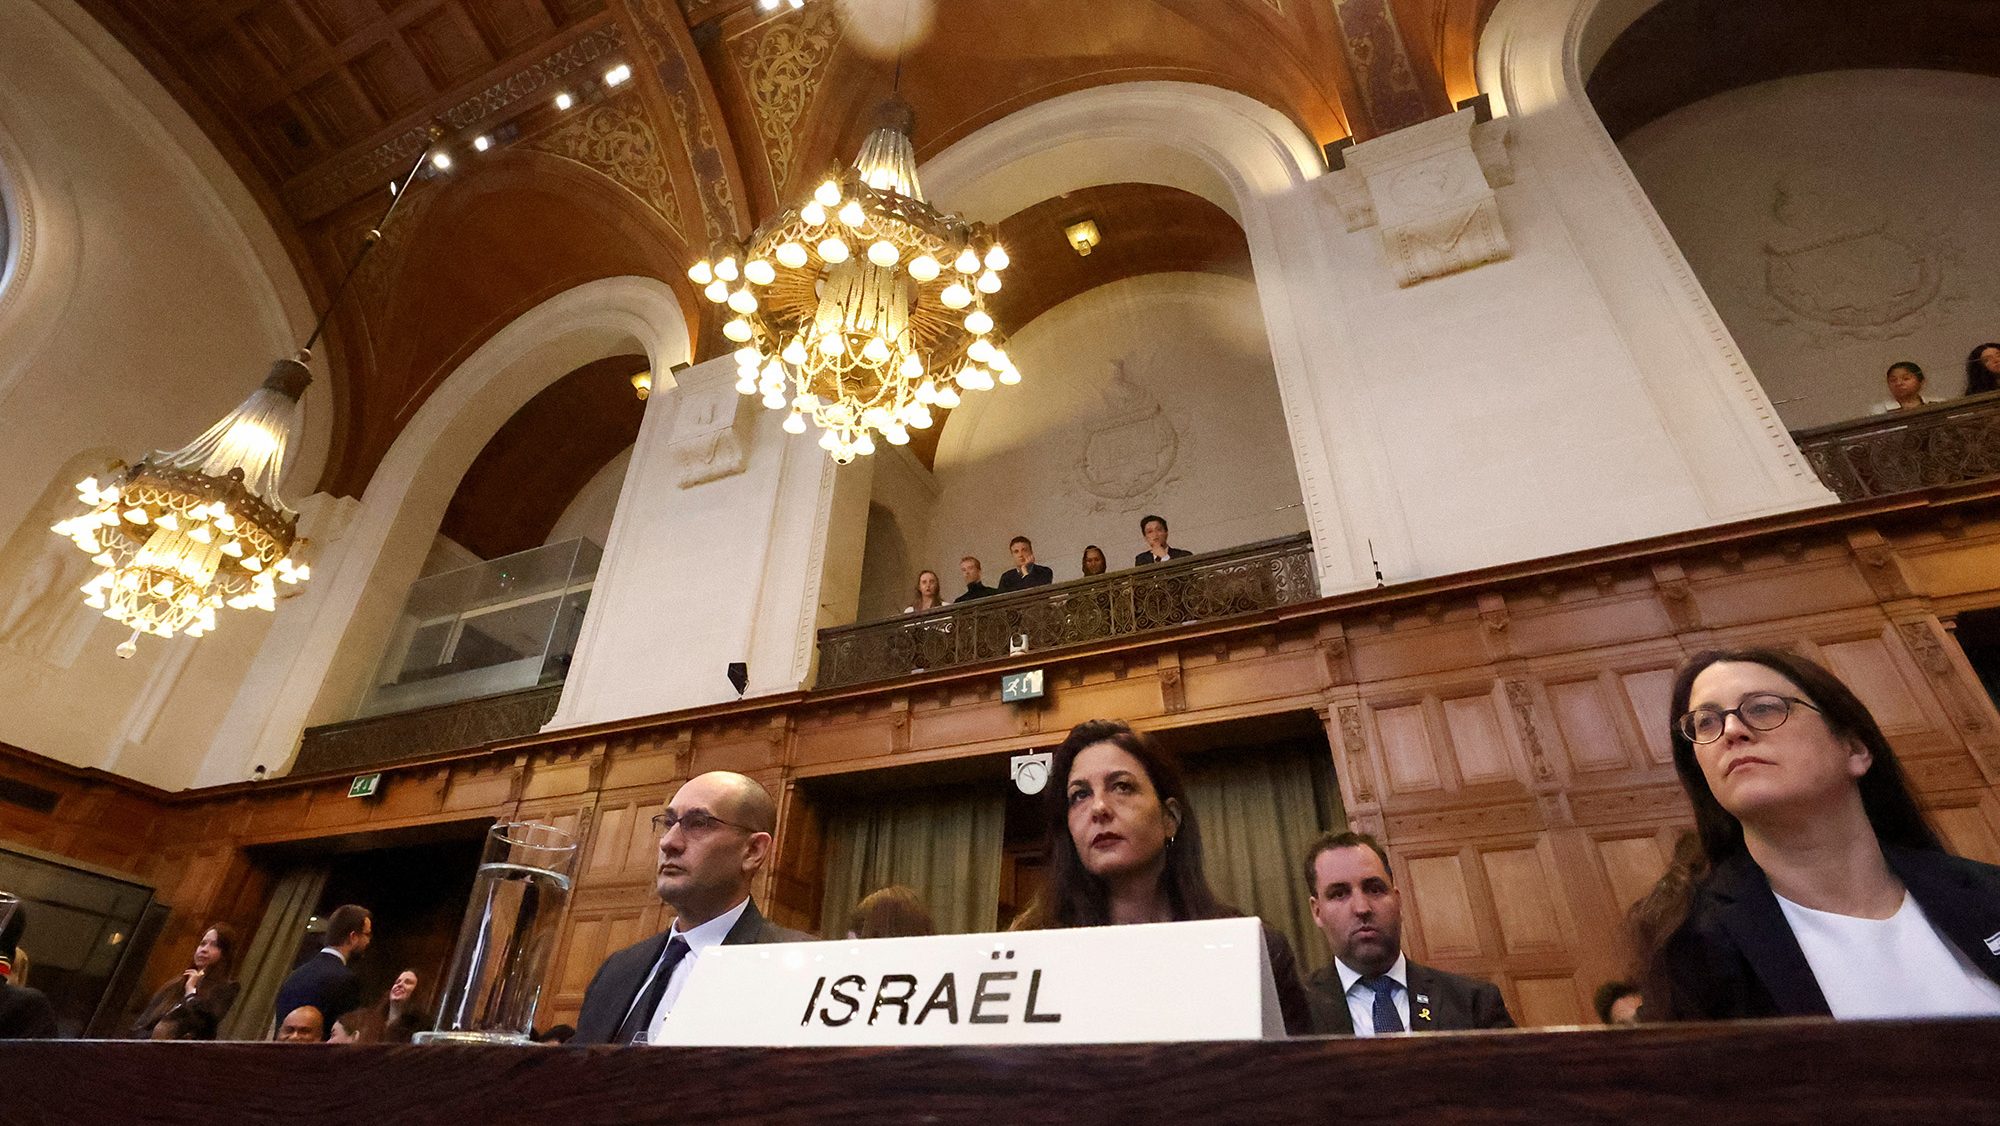 Cuba se unirá al caso contra Israel que presentó Sudáfrica ante la Corte Internacional de Justicia por la guerra en Gaza